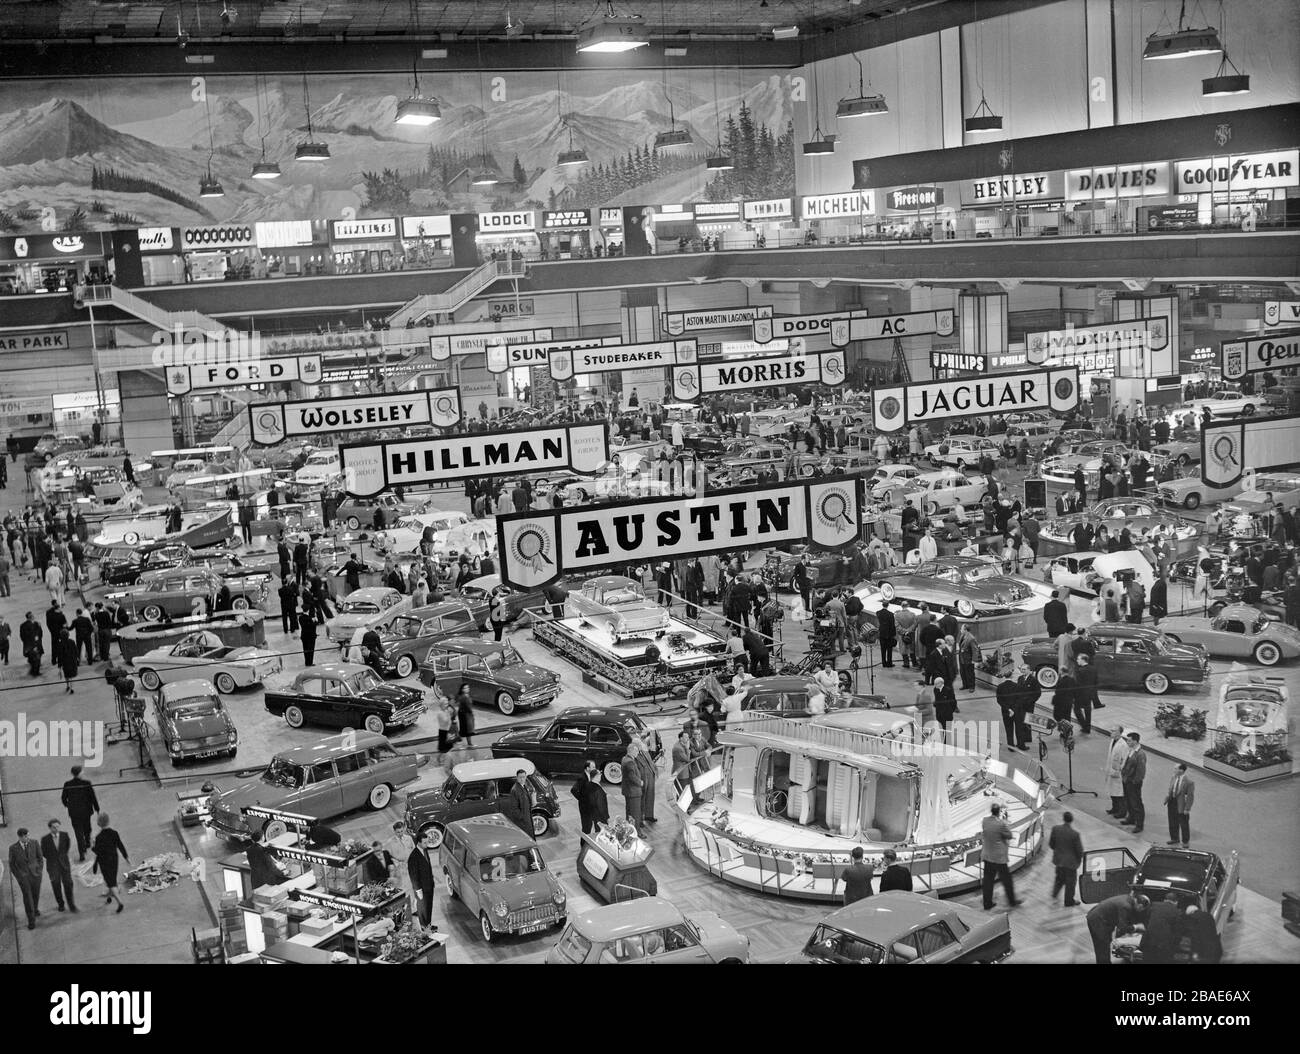 Photo noir et blanc vintage montrant une vue sur le London Motor Show à Earls court en 1961. Les fabricants visibles sont Jaguar, Austin, Hillman, Wolseley, Ford, Morris, Studebaker, Sunbeam, Vauxhall, AC, Dodge. Banque D'Images